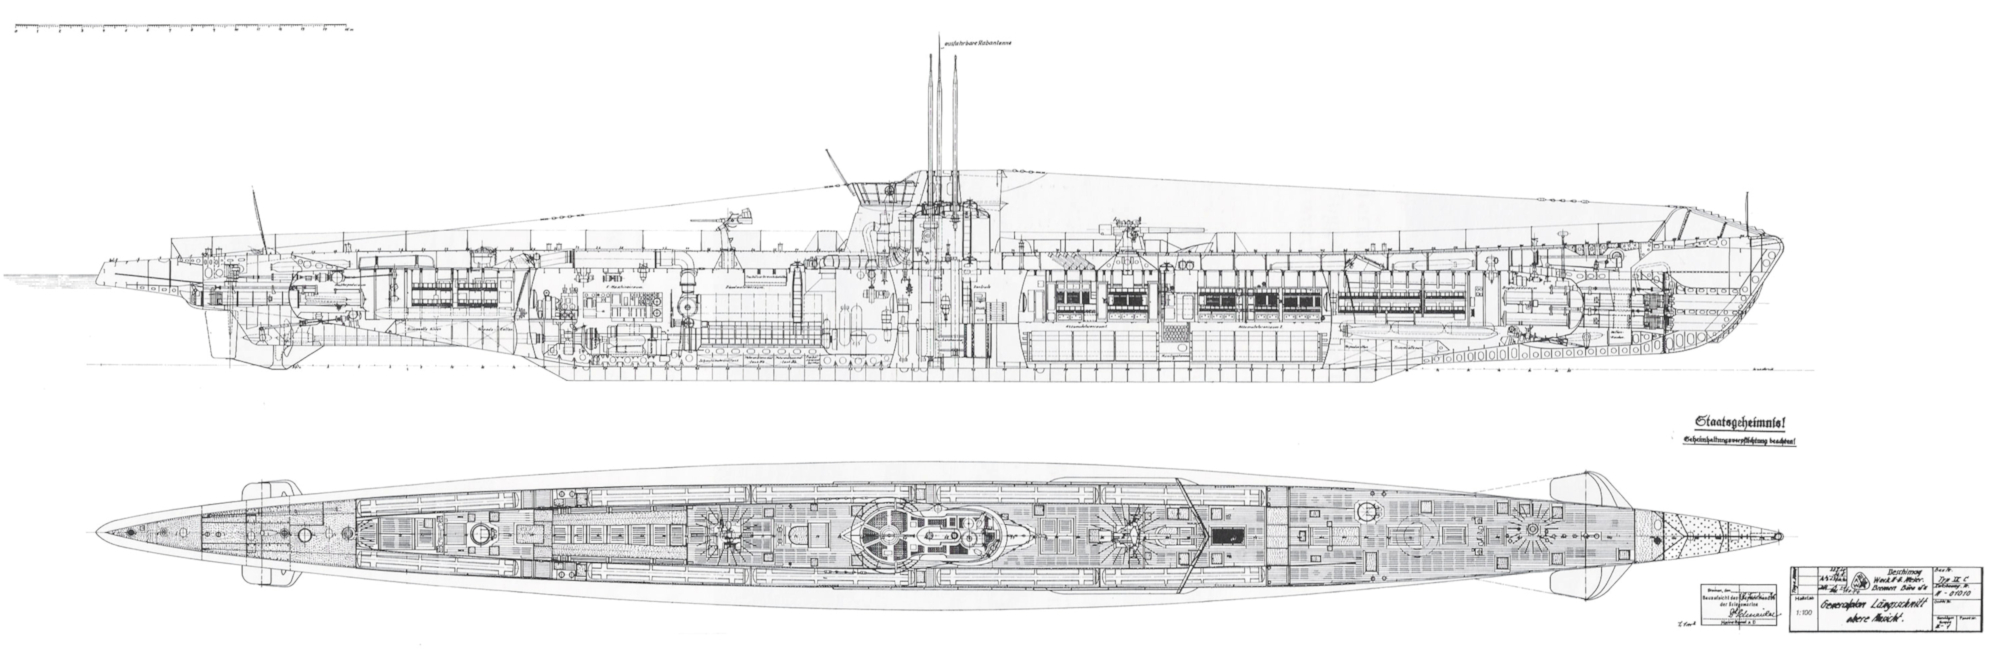 IXC típusú tengeralattjáró metszetrajza.